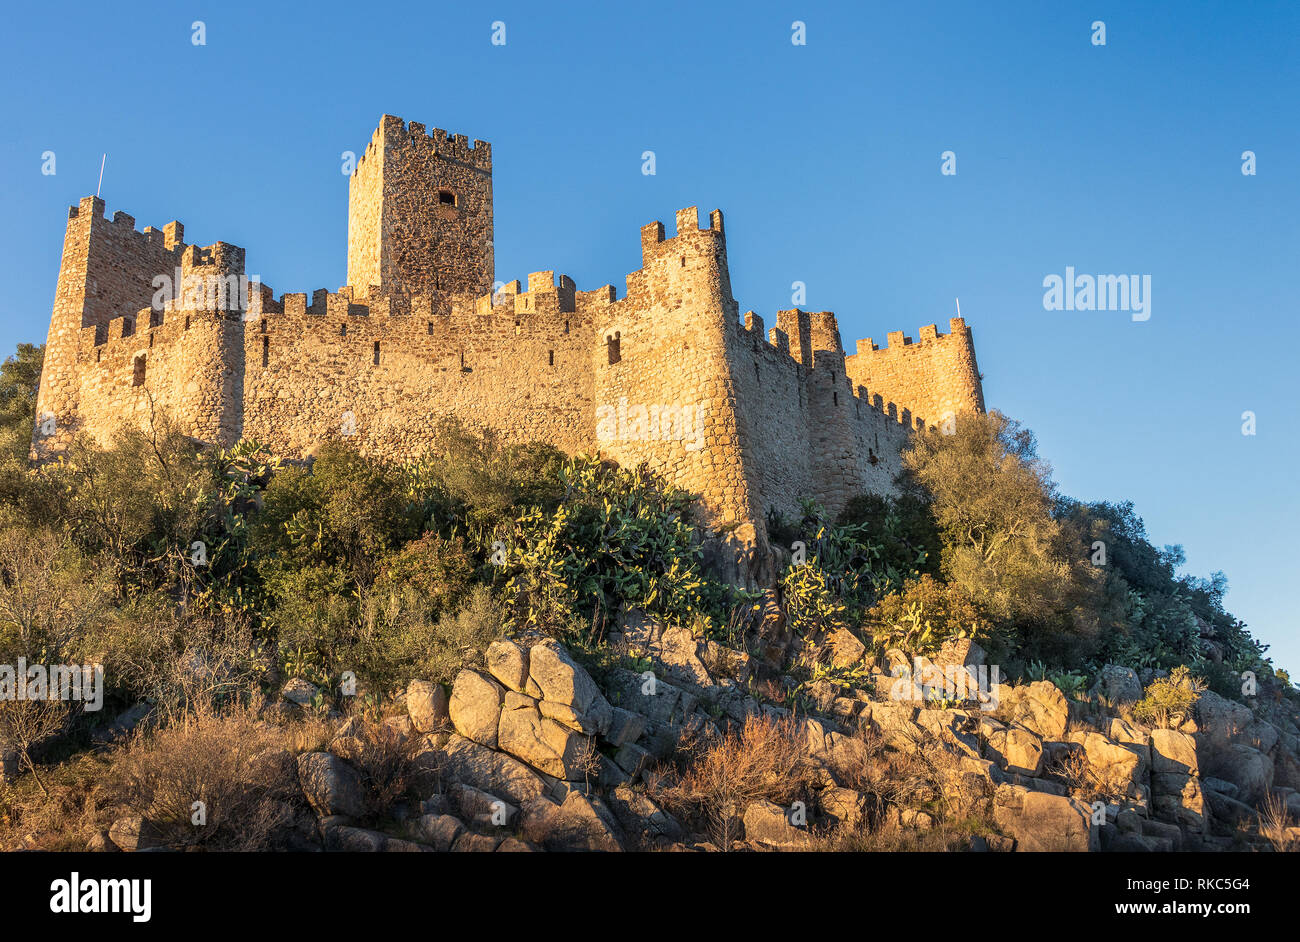 Almourol, Portogallo - 12 Gennaio 2019: del XII secolo il castello di Almourol illuminata dal sole del tardo pomeriggio con il blu del cielo. Foto Stock